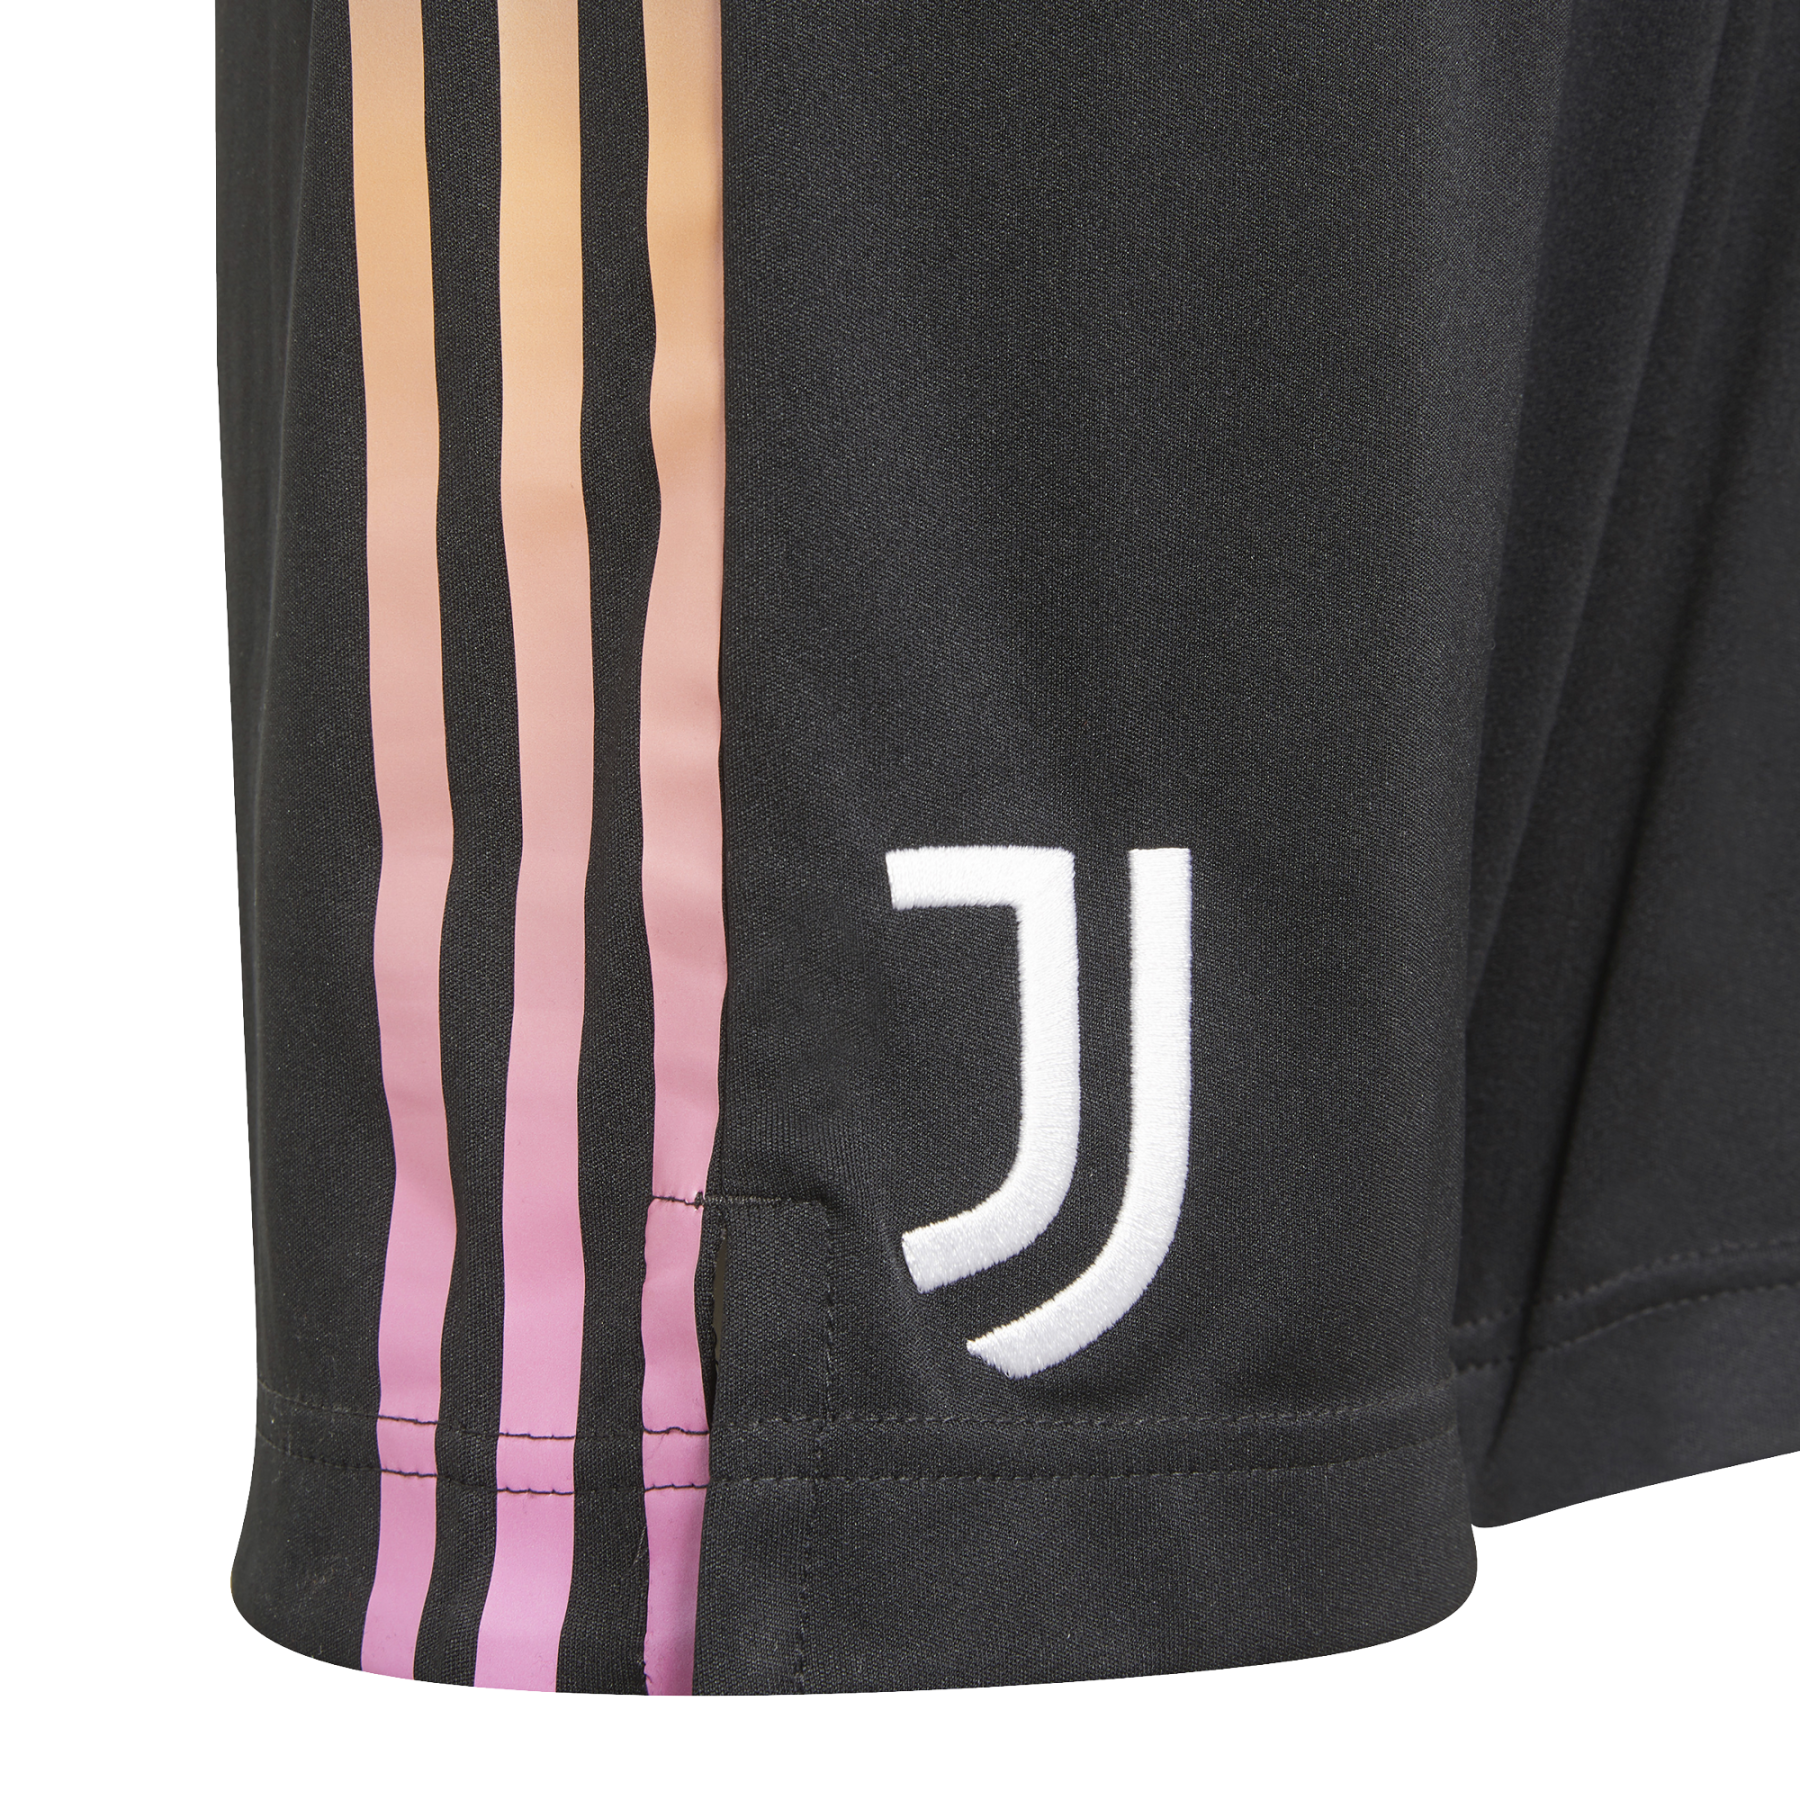 Children's away shorts Juventus 2021/22